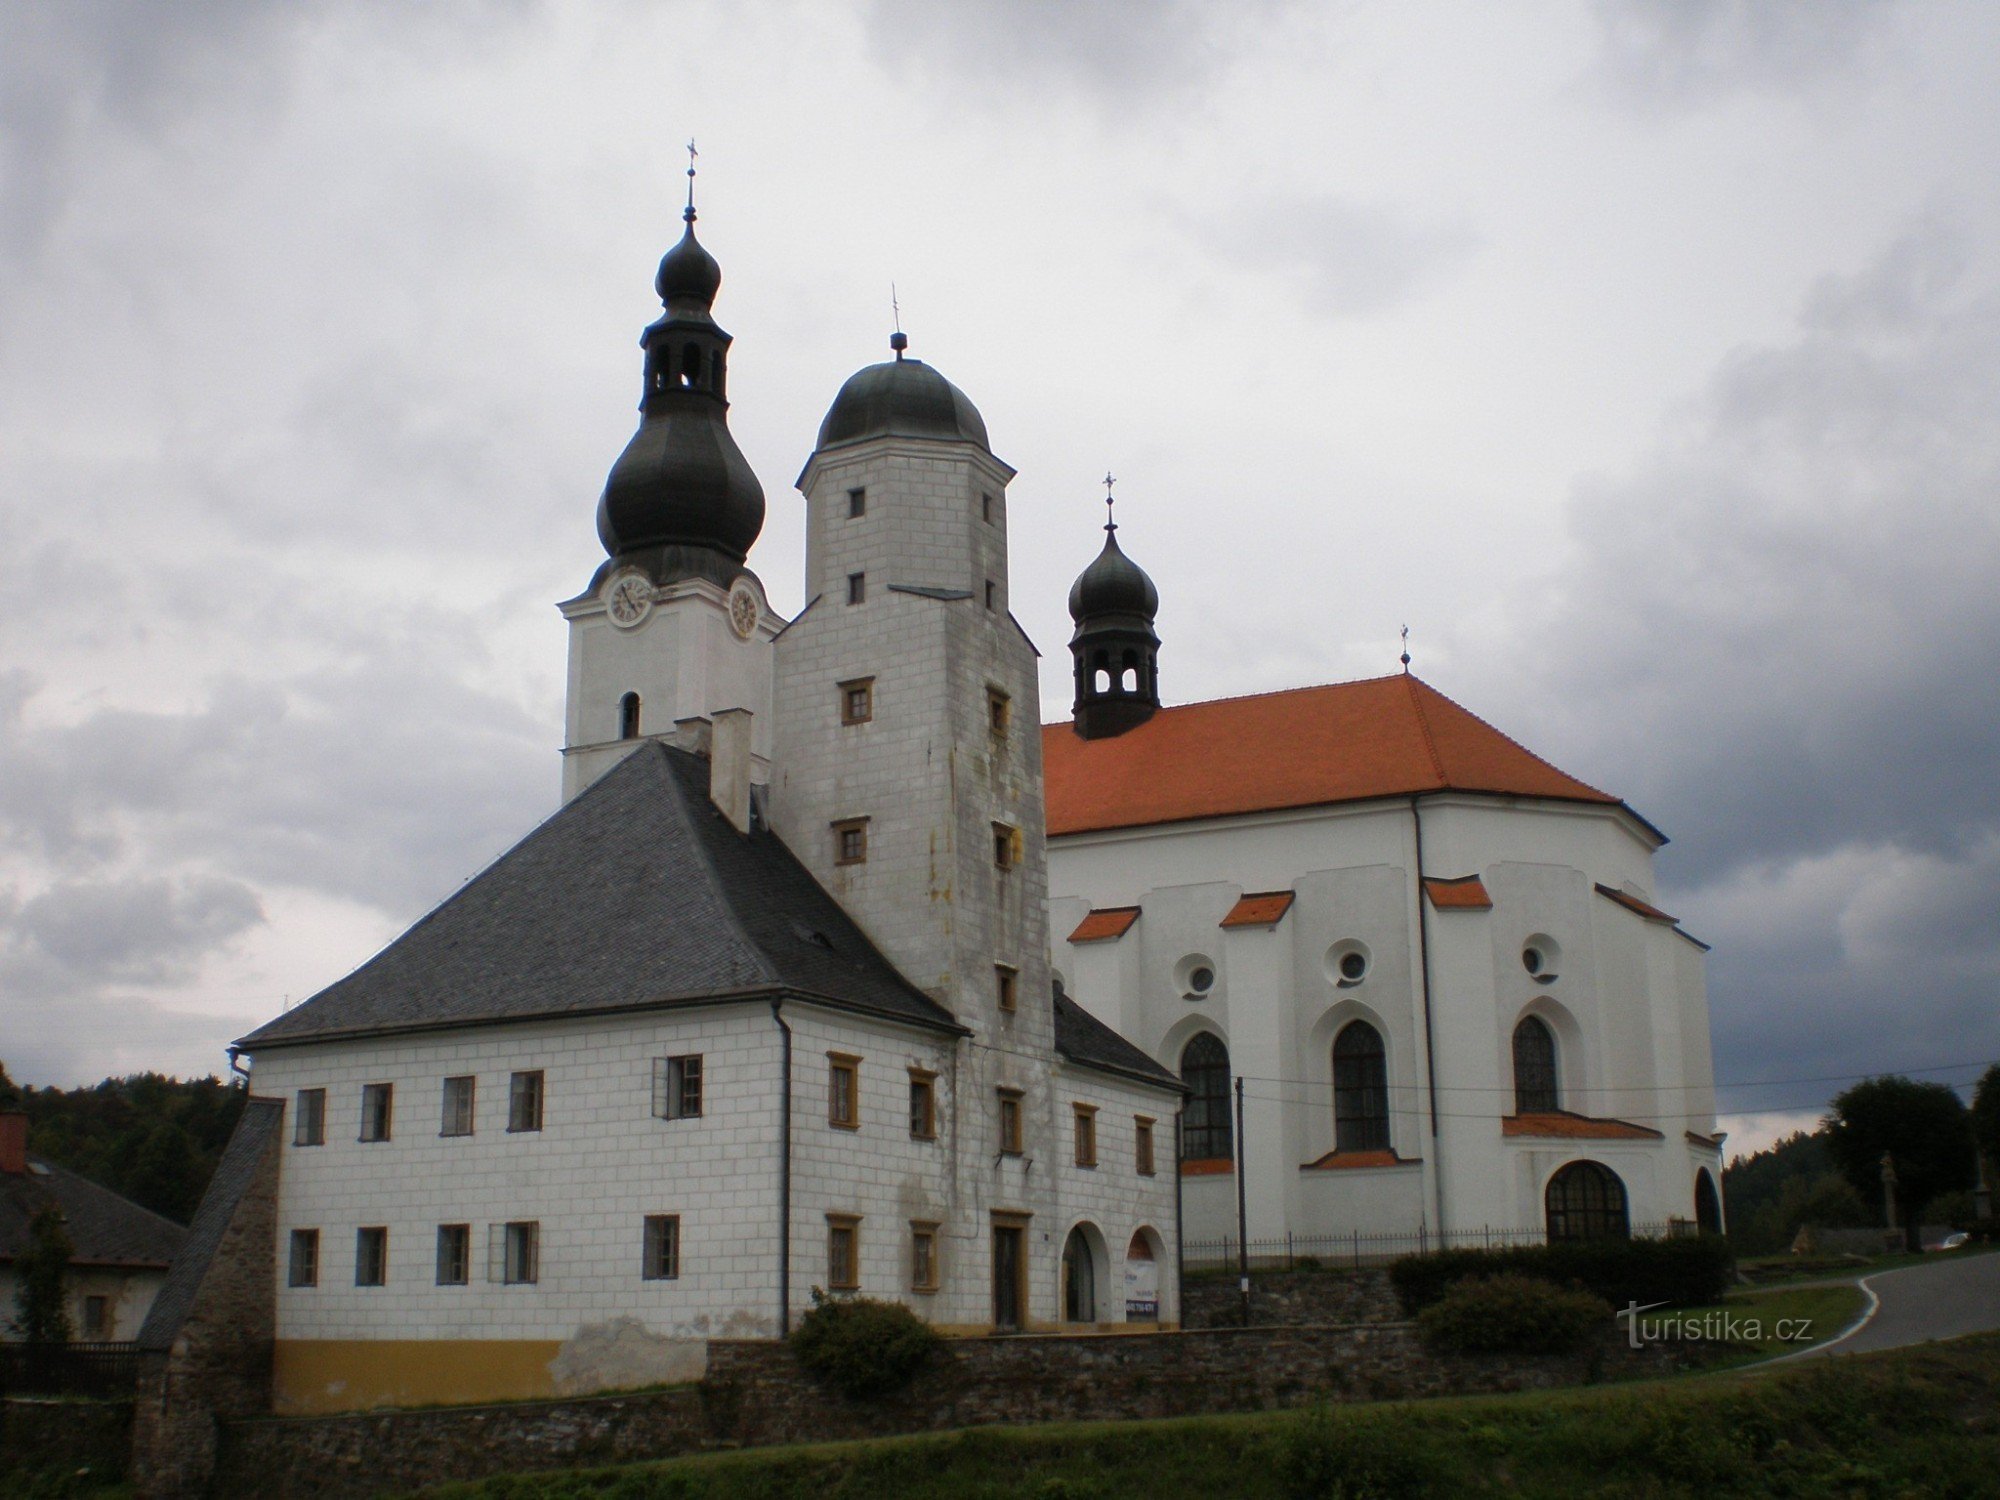 Branná - Burg und Kirche